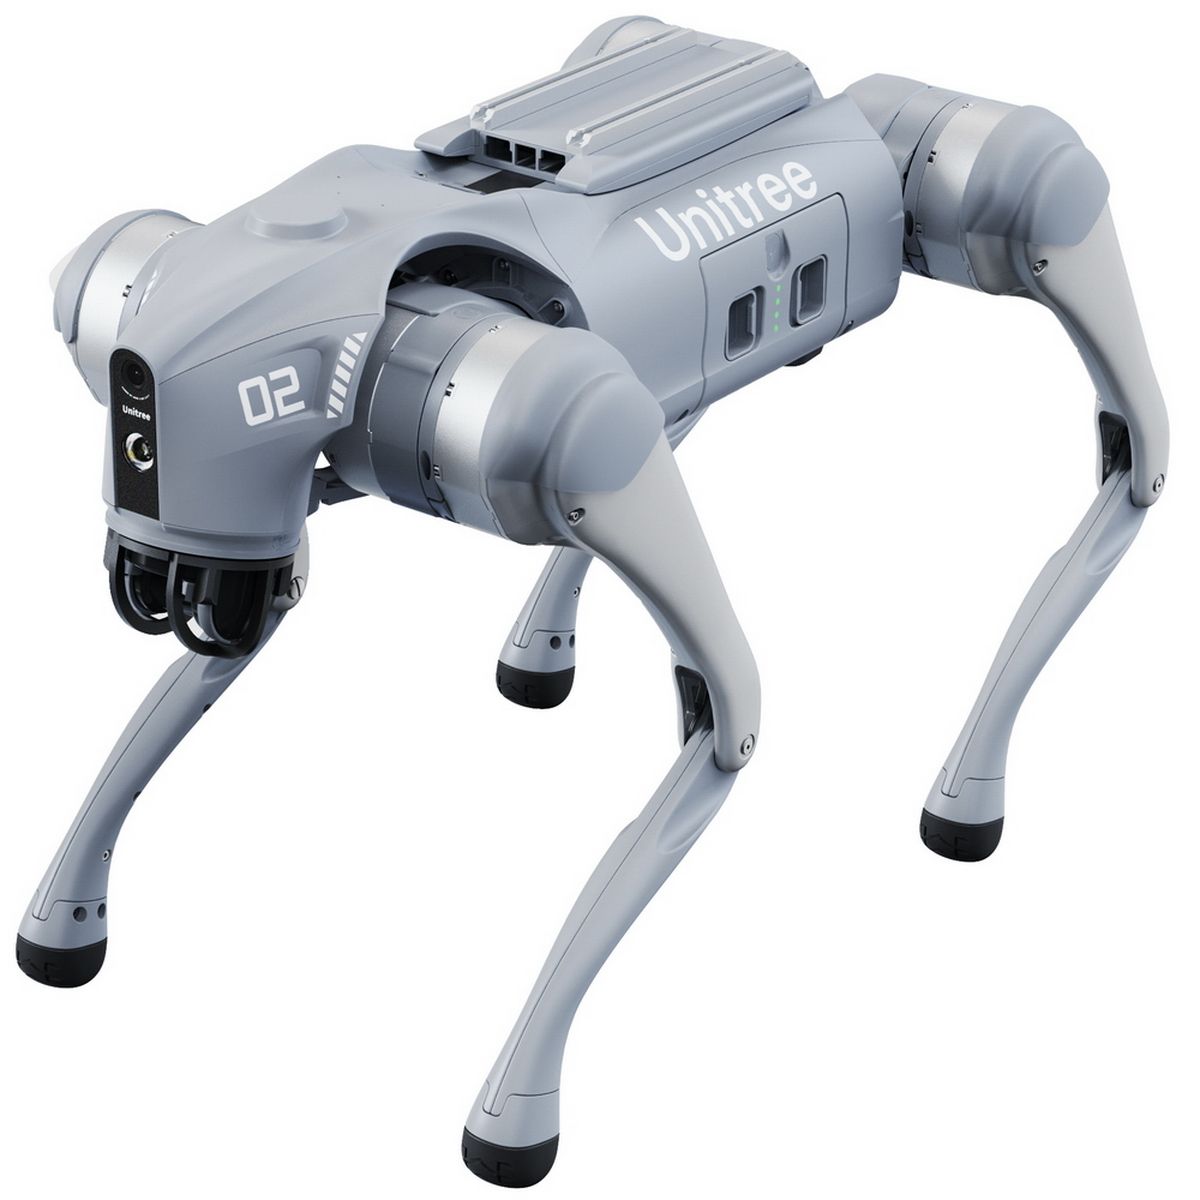 Бионический четырехопорный робот Unitree модели Go2 версии AIR Unitree GO2-AIR игрушка гору в дом